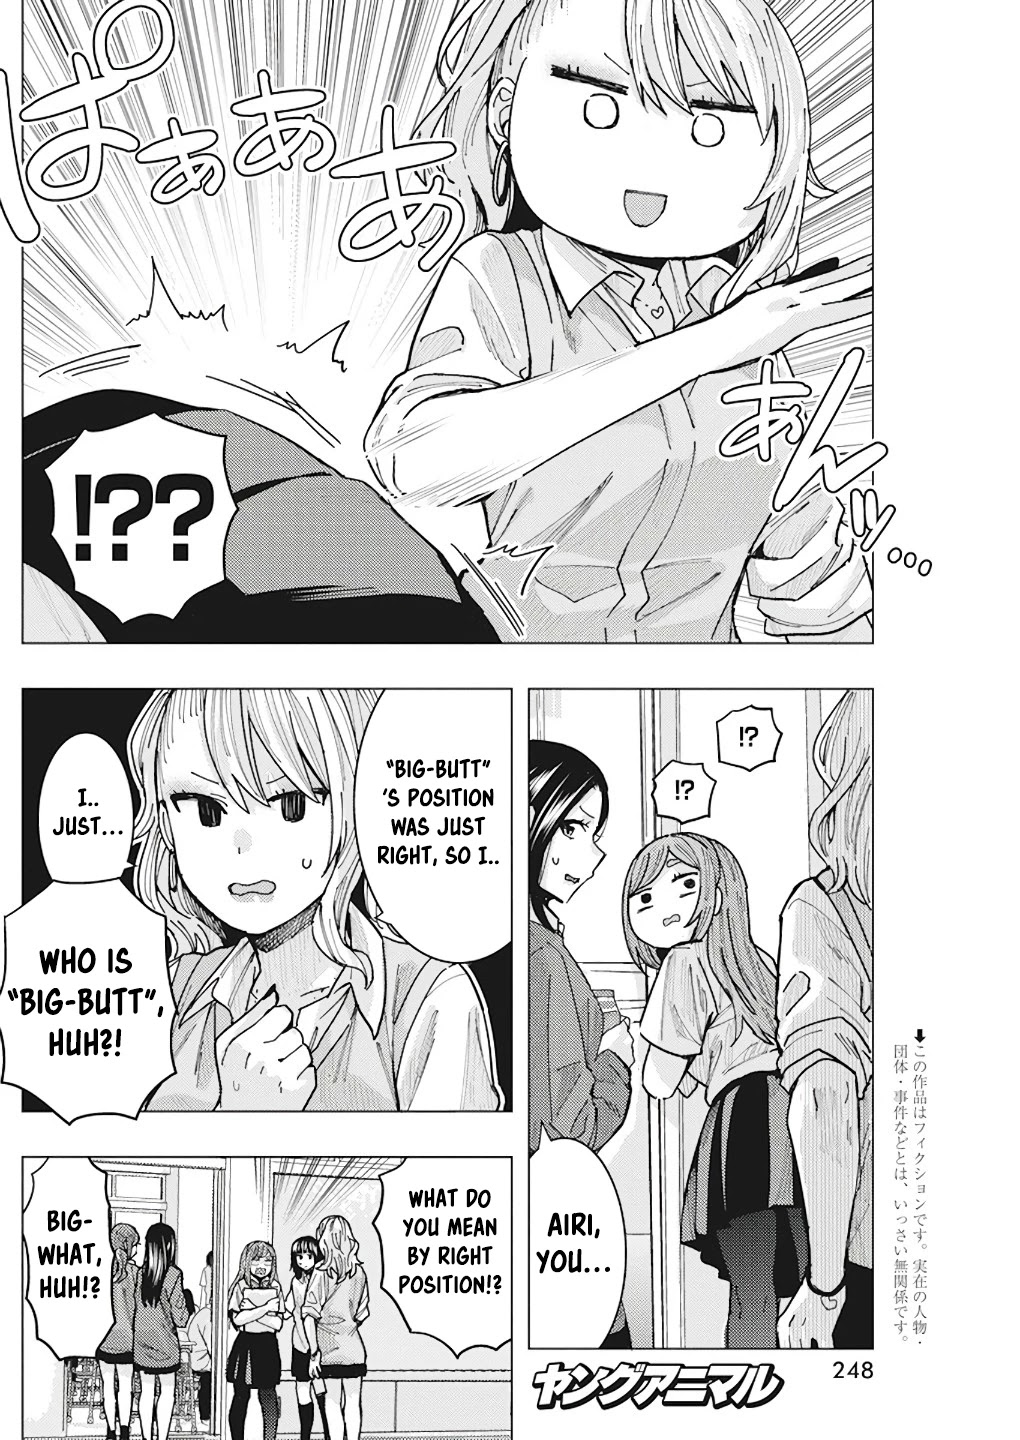 "nobukuni-San" Does She Like Me? - chapter 14 - #4